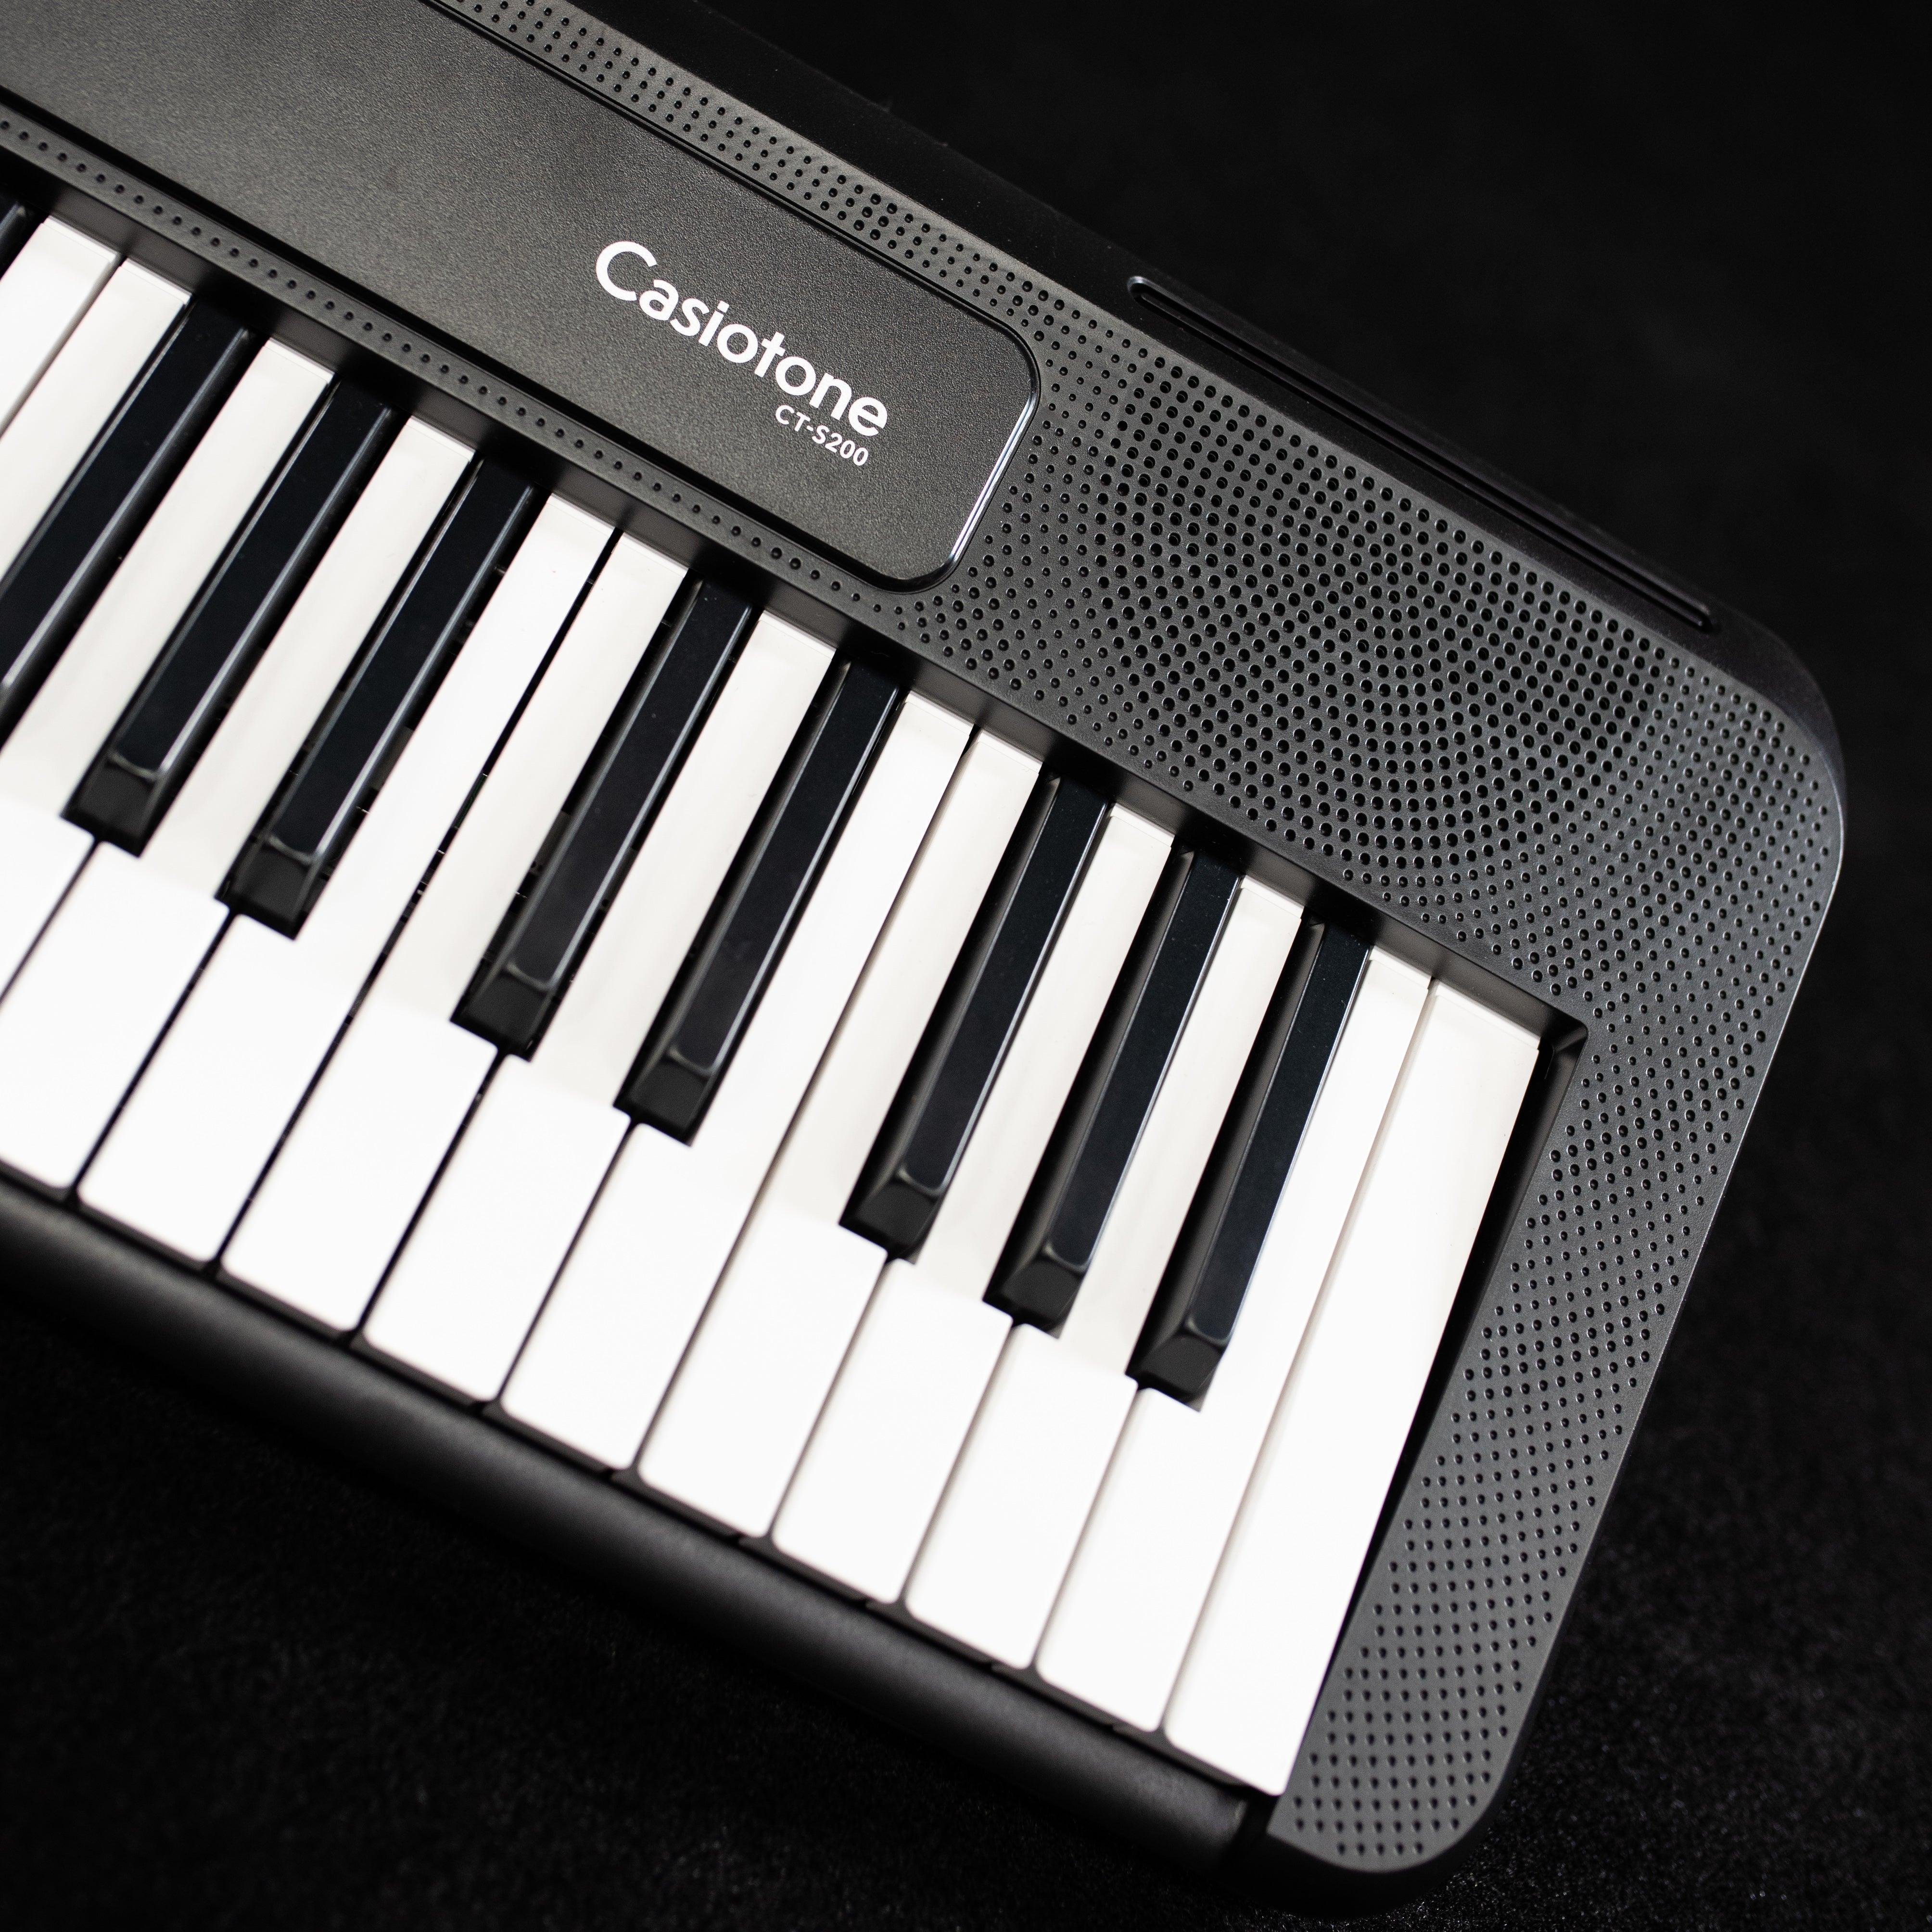 Casio Casiotone CT-S200 Digital Piano - Impulse Music Co.